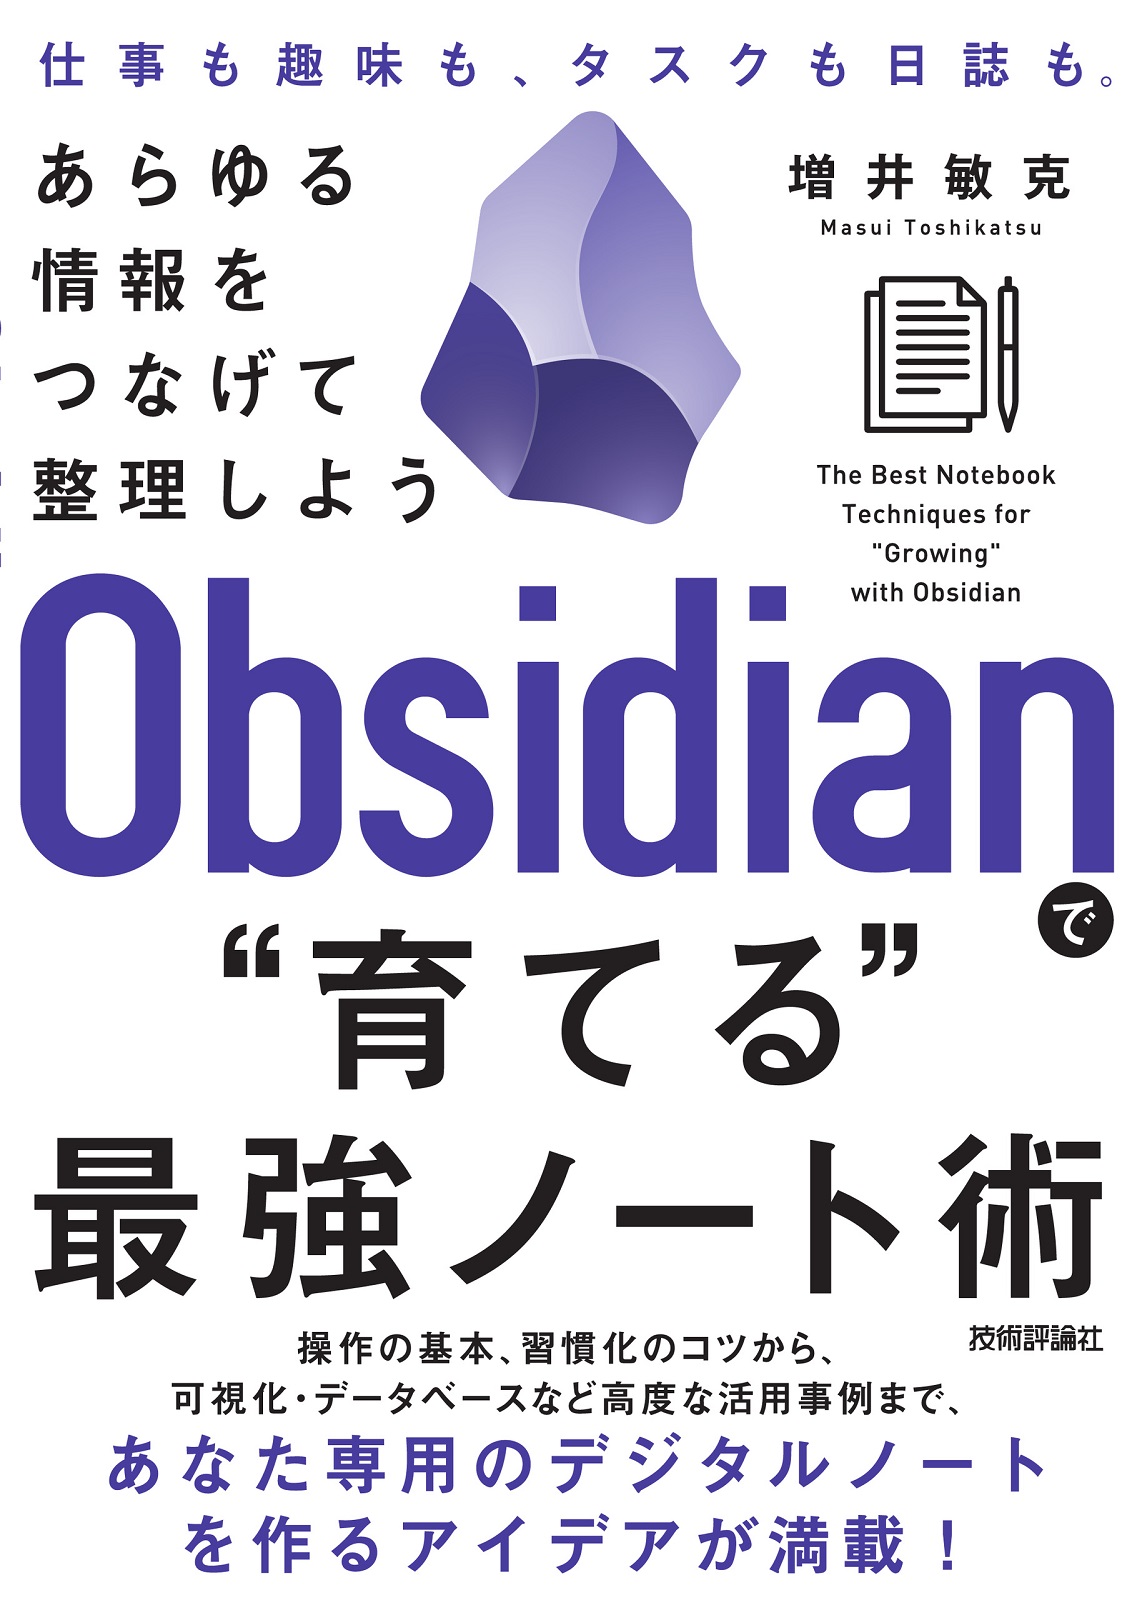 Obsidianで“育てる”最強ノート術 ——あらゆる情報をつなげて整理しよう